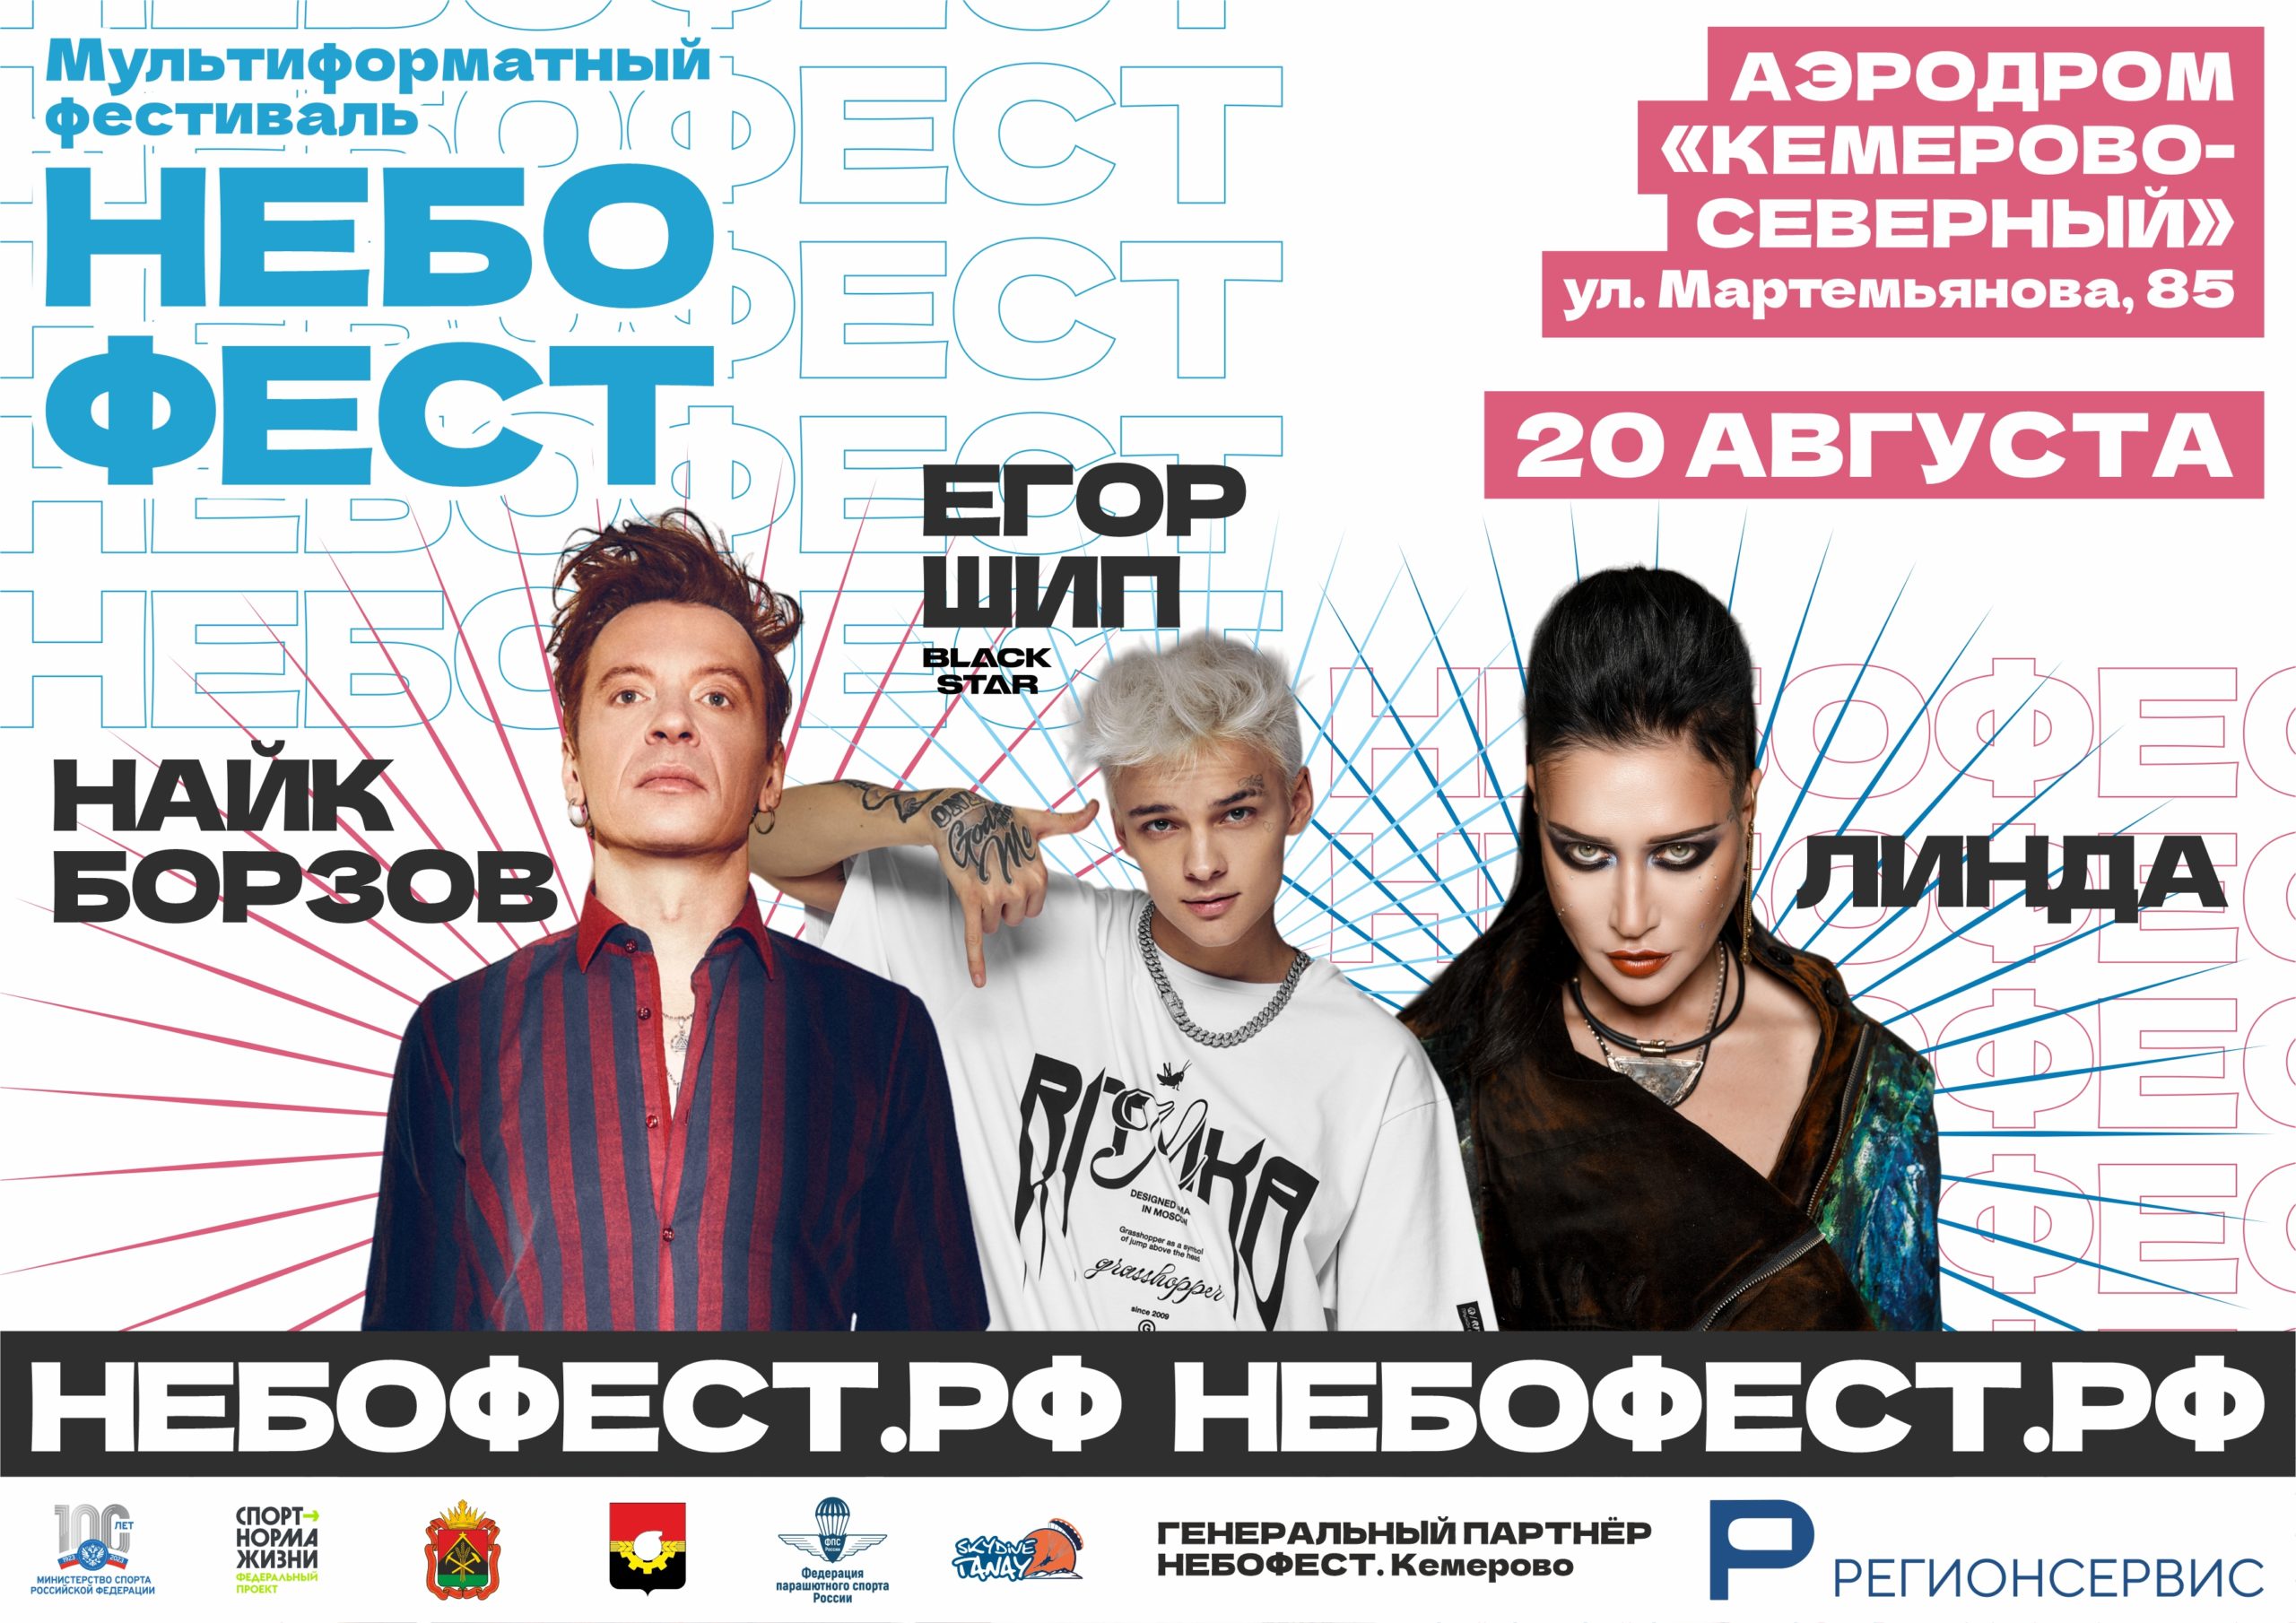 Организаторы раскрыли новые подробности о фестивале «НЕБОФЕСТ»